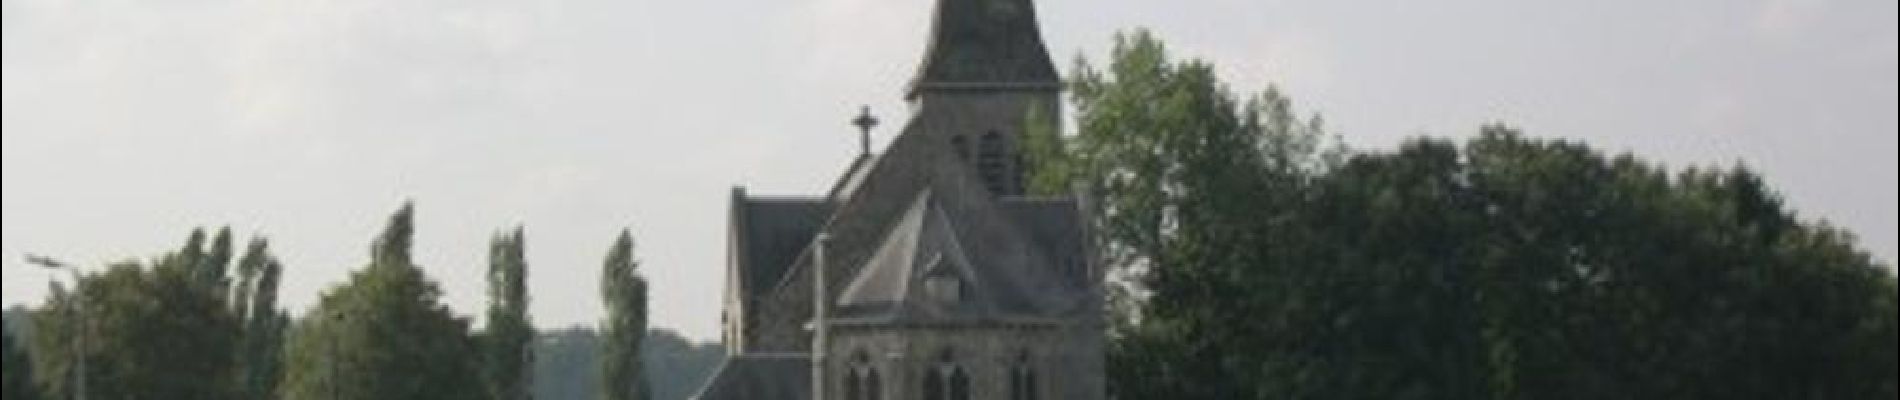 POI Andenne - Eglise Saint-Martin de Maizeret - Photo